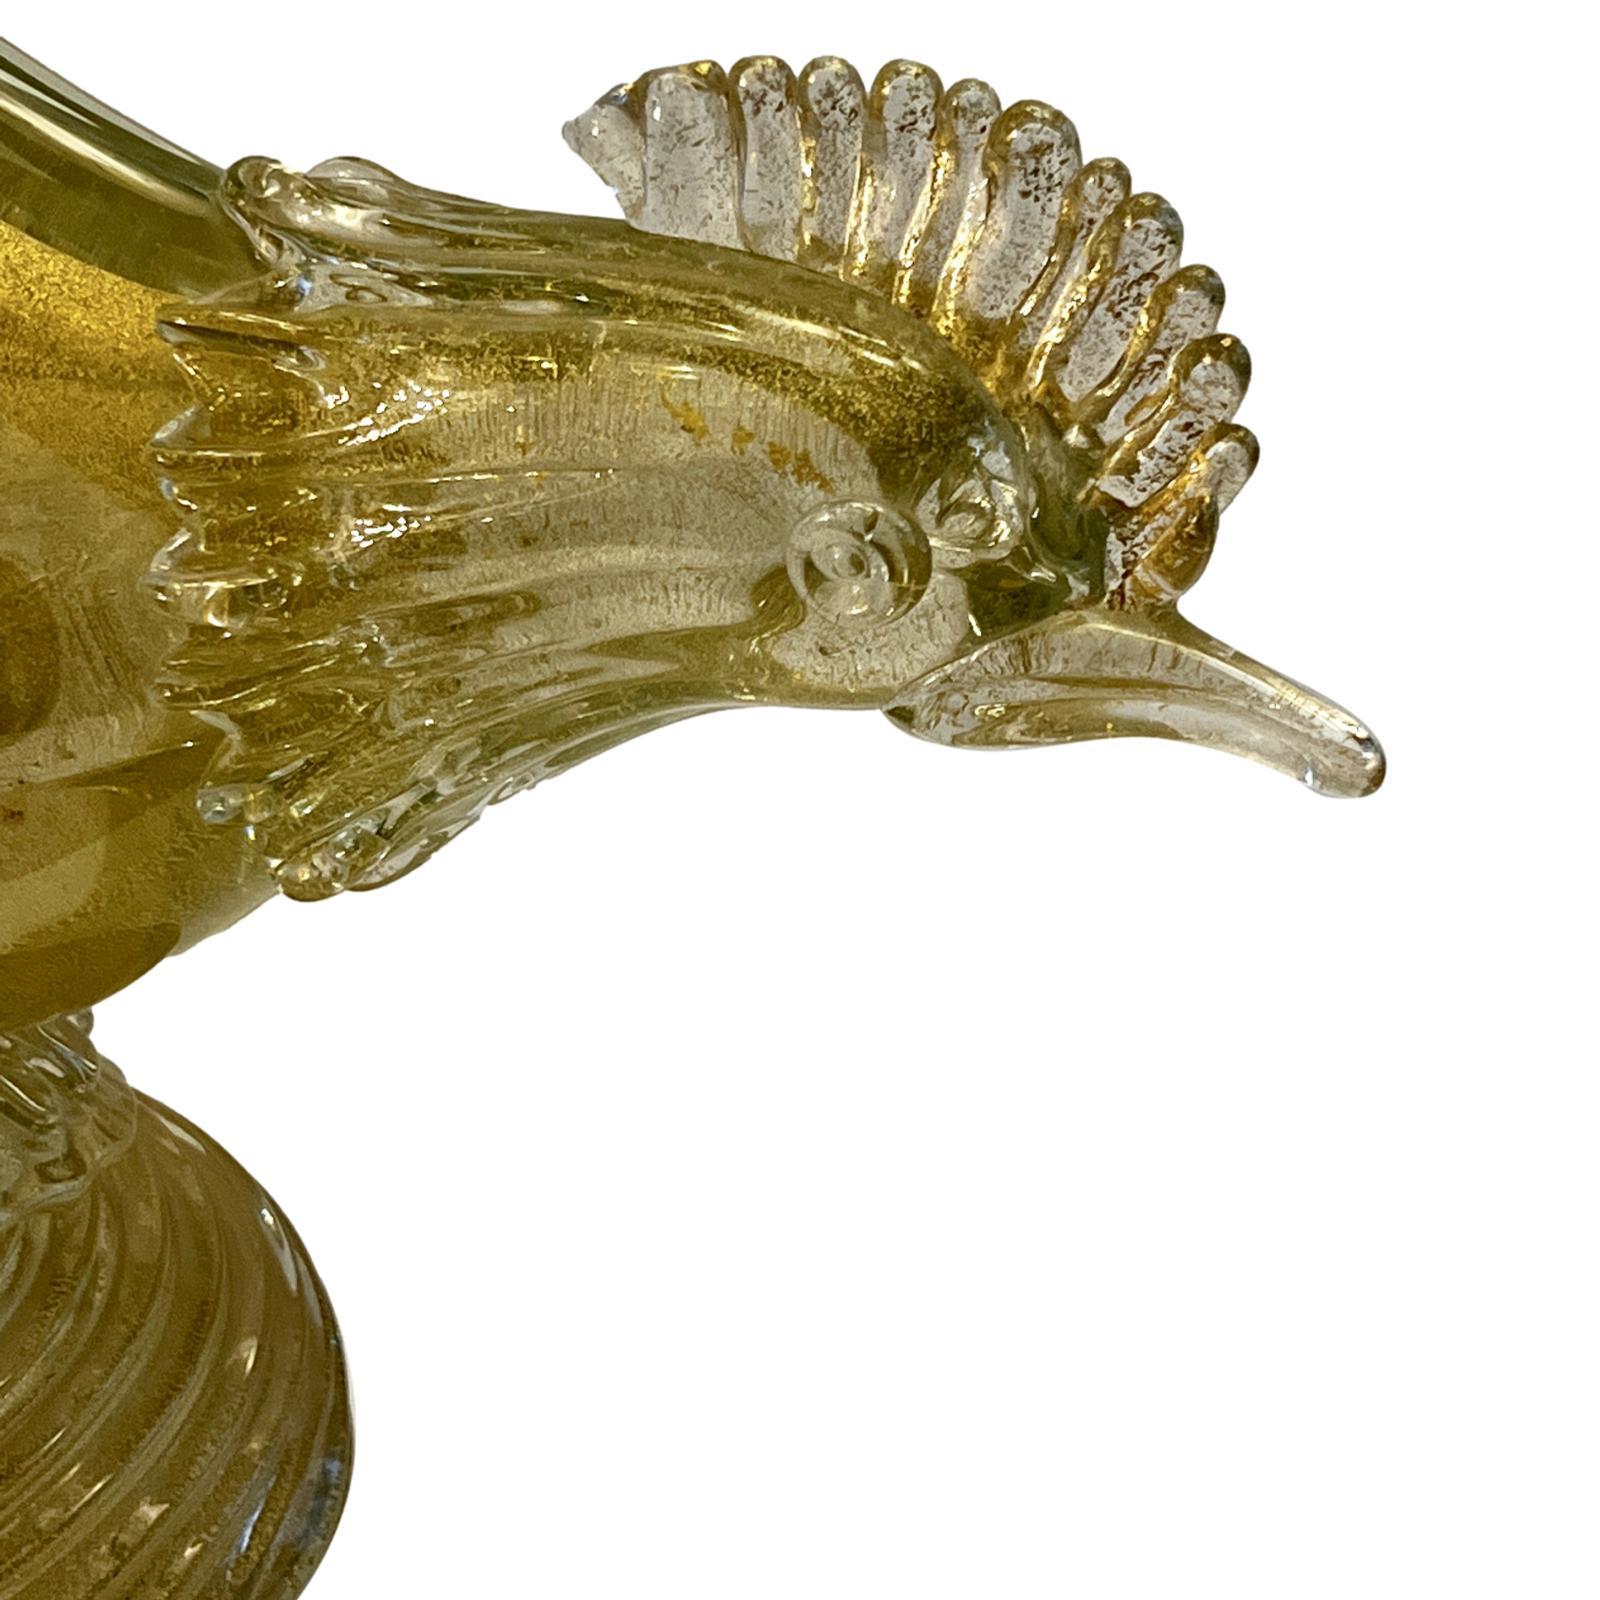 Paire de faisans italiens en or soufflé et verre transparent datant des années 1960.

Mesures :
Hauteur : 19